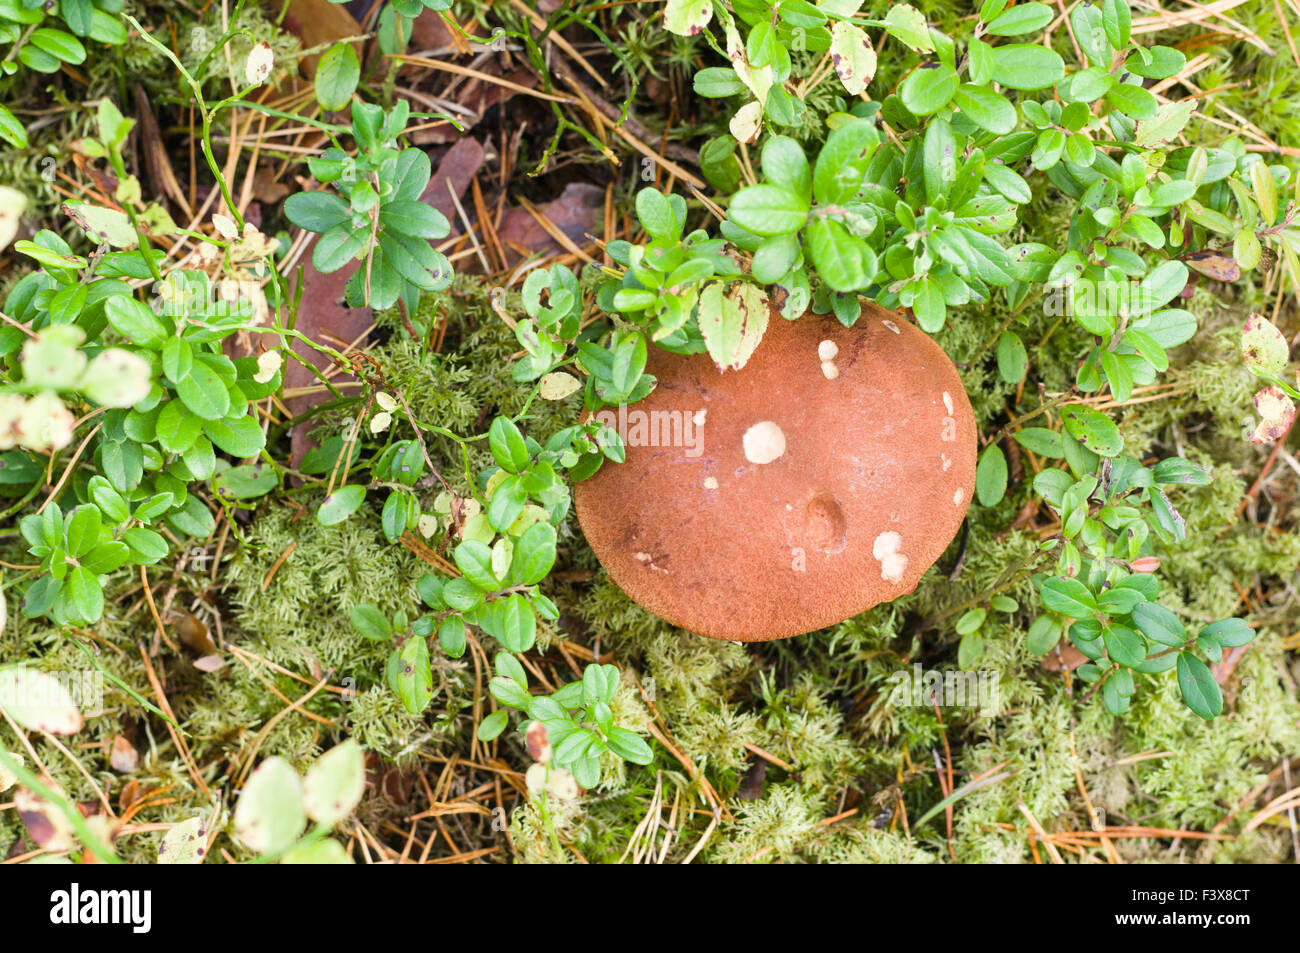 Orange-cup mushroom (Leccinum Aurantiacum) overlook view Stock Photo